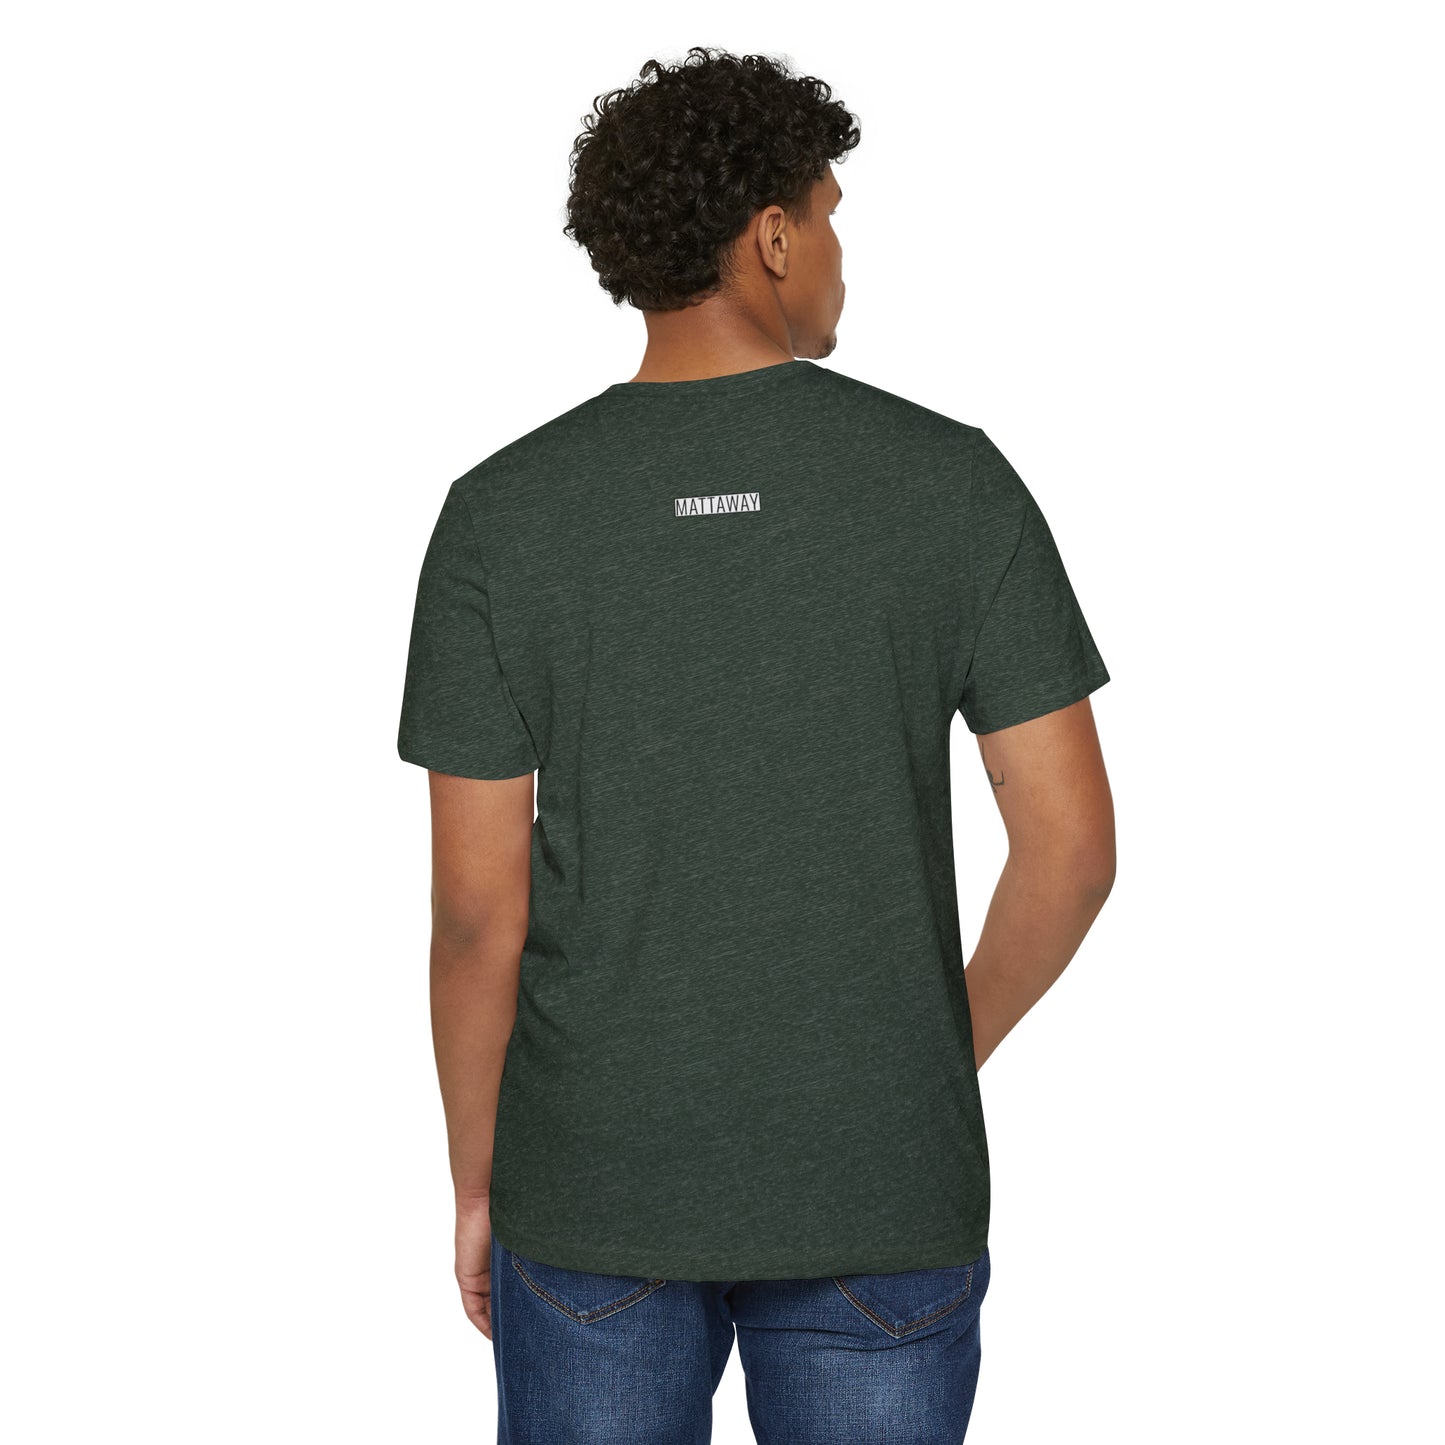 MINIMAL SHAPES 103 - Unisex Recycled Organic T-Shirt